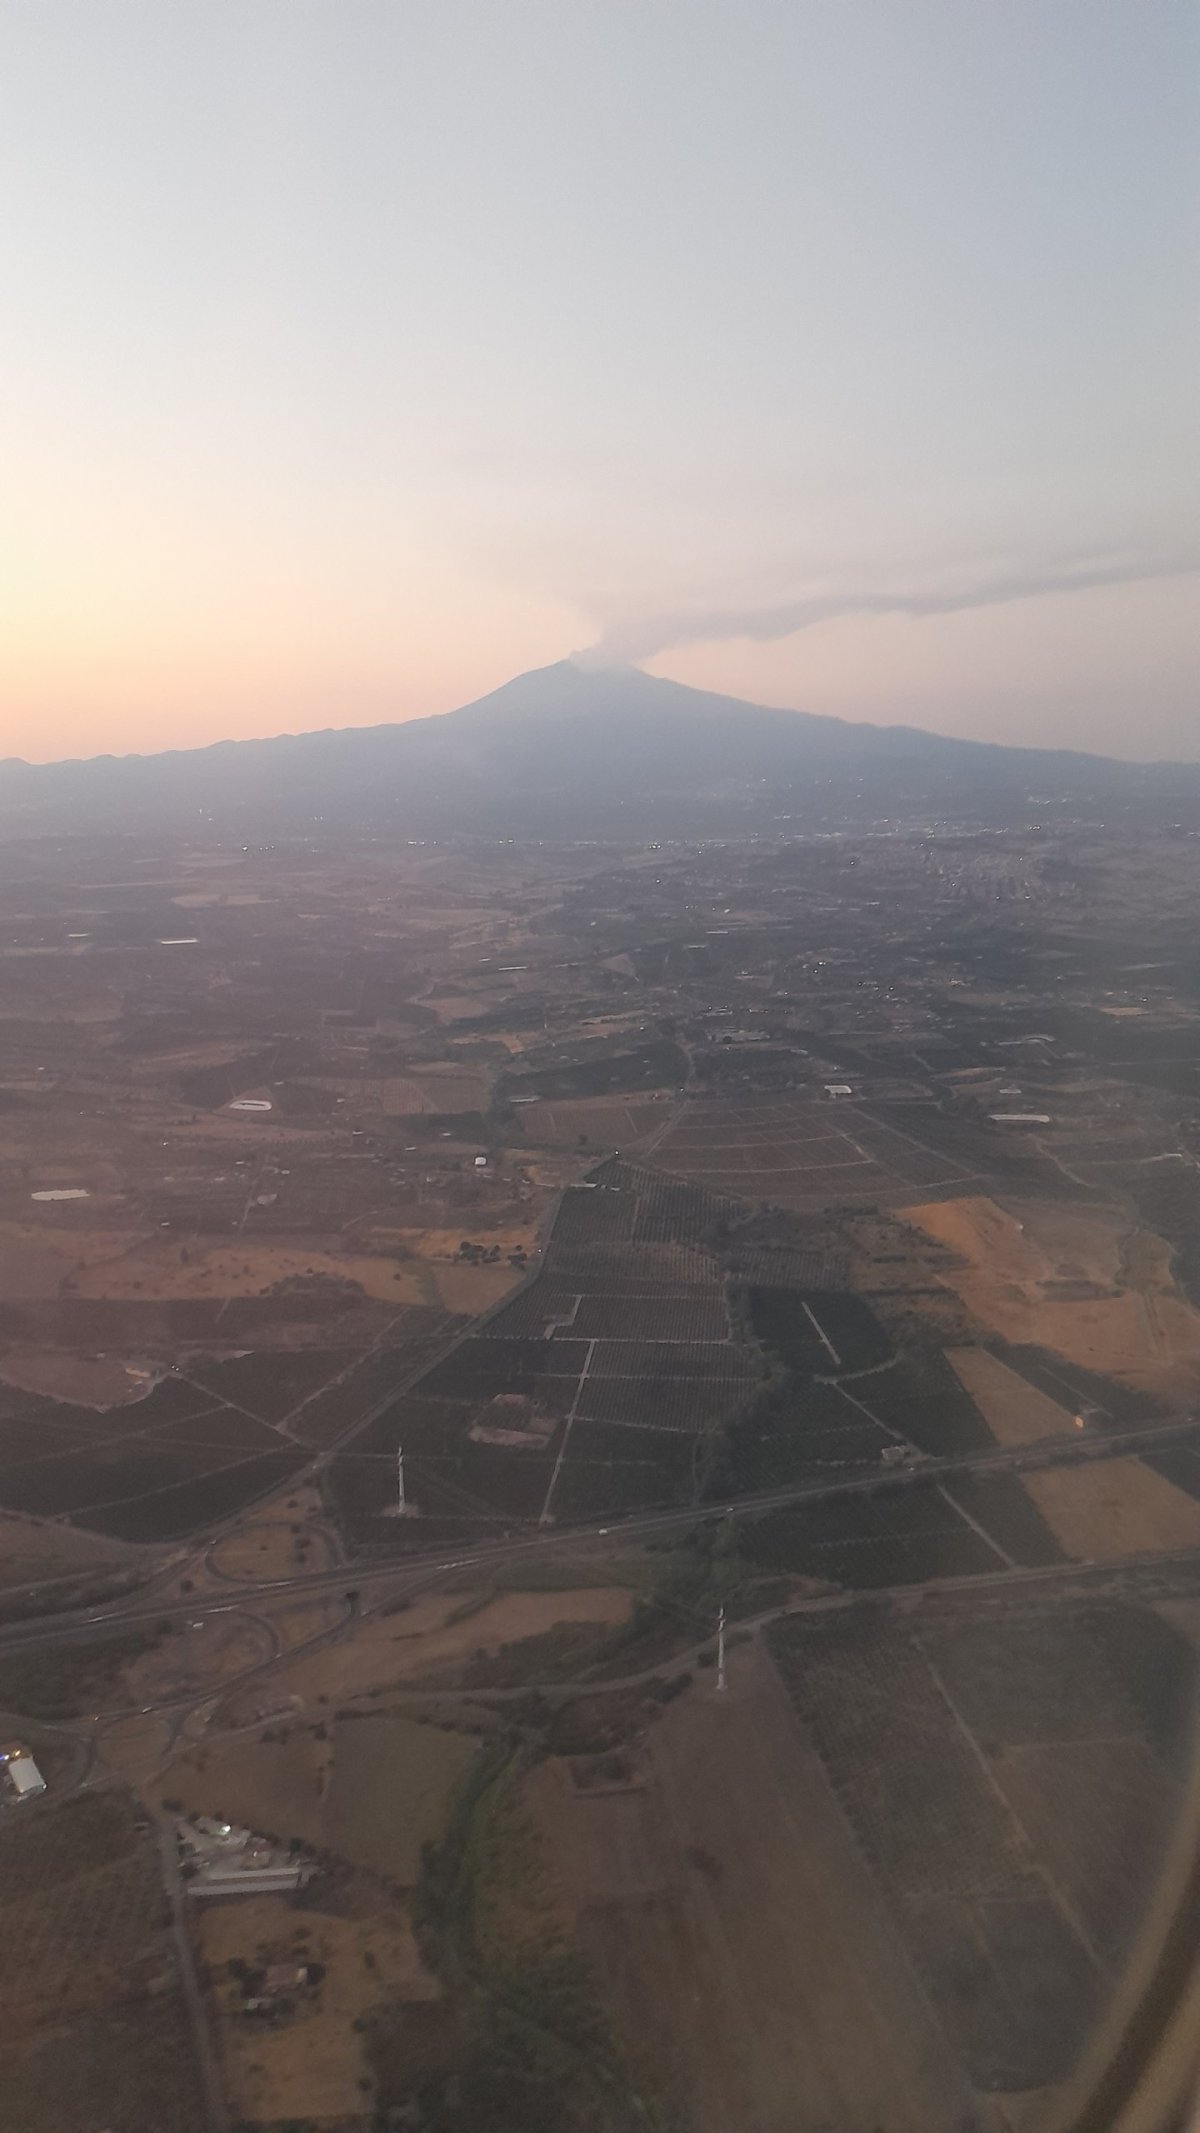 První pohled na Etnu z letadla